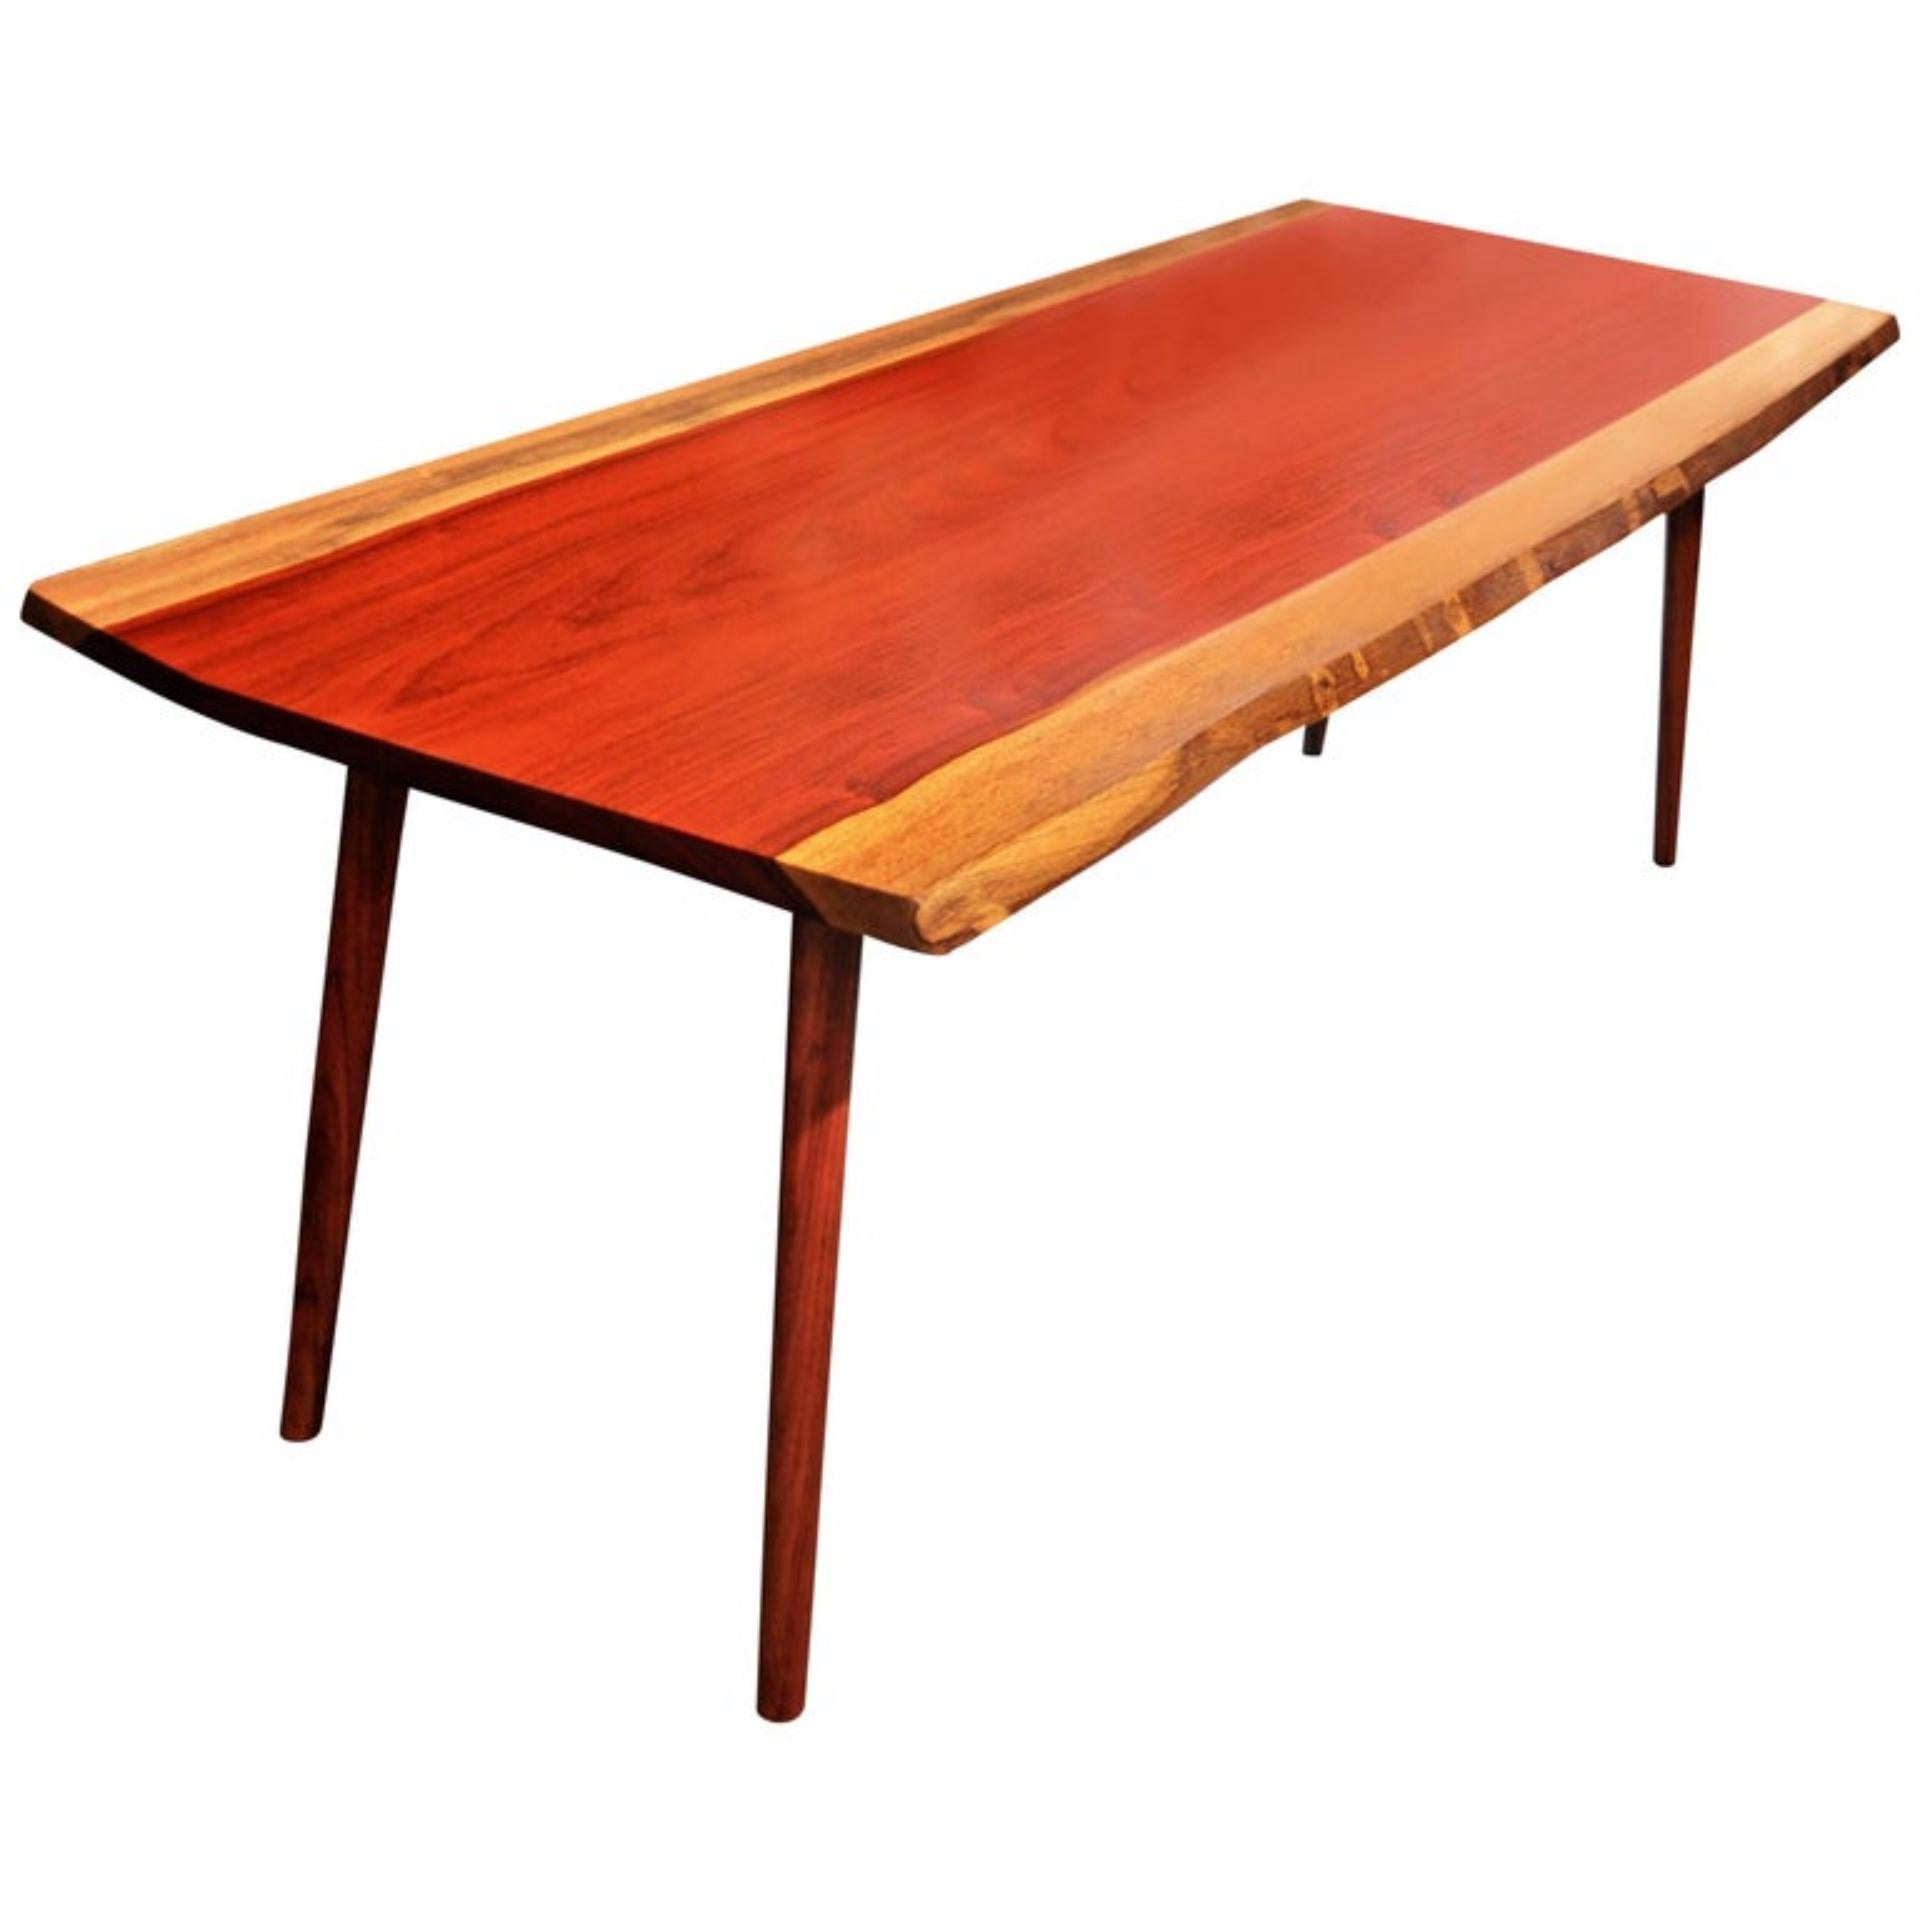 Einzigartiger signierter Tisch von Jörg Pietschmann
Esstisch, Padouk, T1211
Maße: H 75 x B 210 x T 84 cm,
Seltene große Padouk-Planke, intensiv rote Farbe mit schöner Maserung, die zu Burgunderrot nachdunkelt.
Zwei verspiegelte Bretter bilden